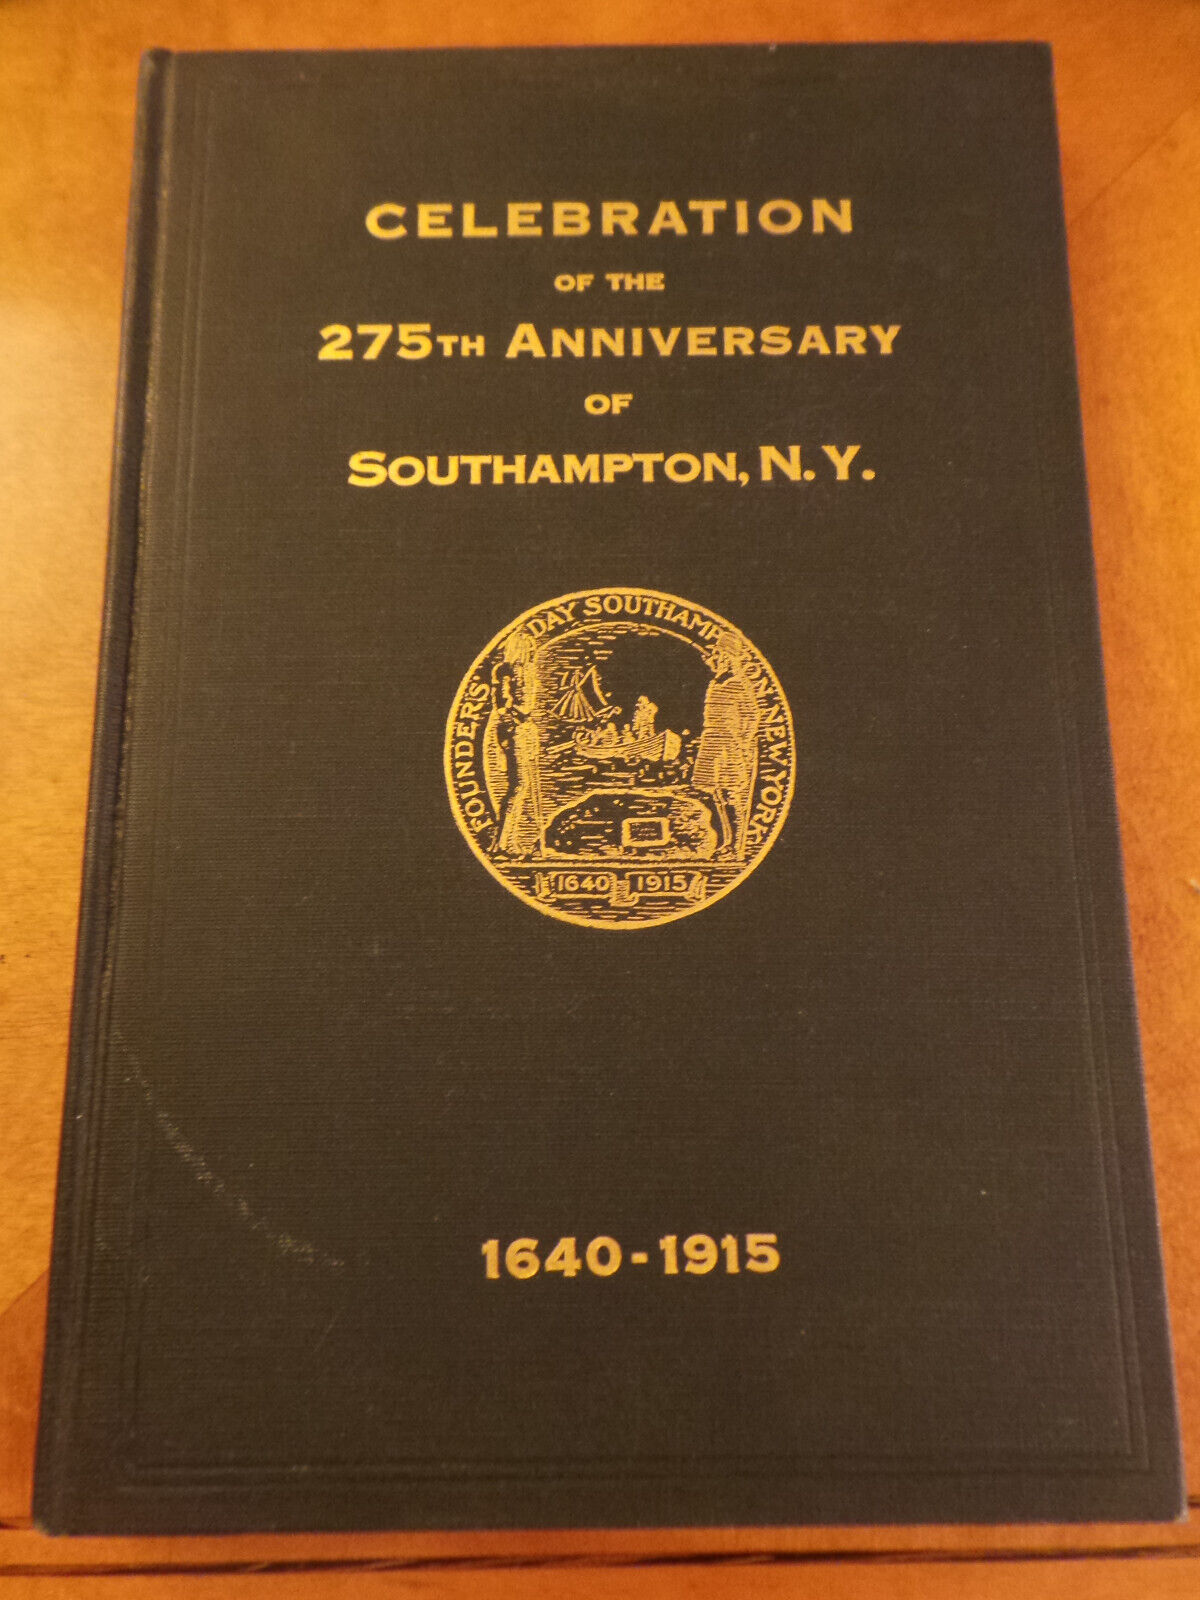 Southampton, NY 1640-1915 Celebration of the 275th Anniversary HC John Hunt 1916